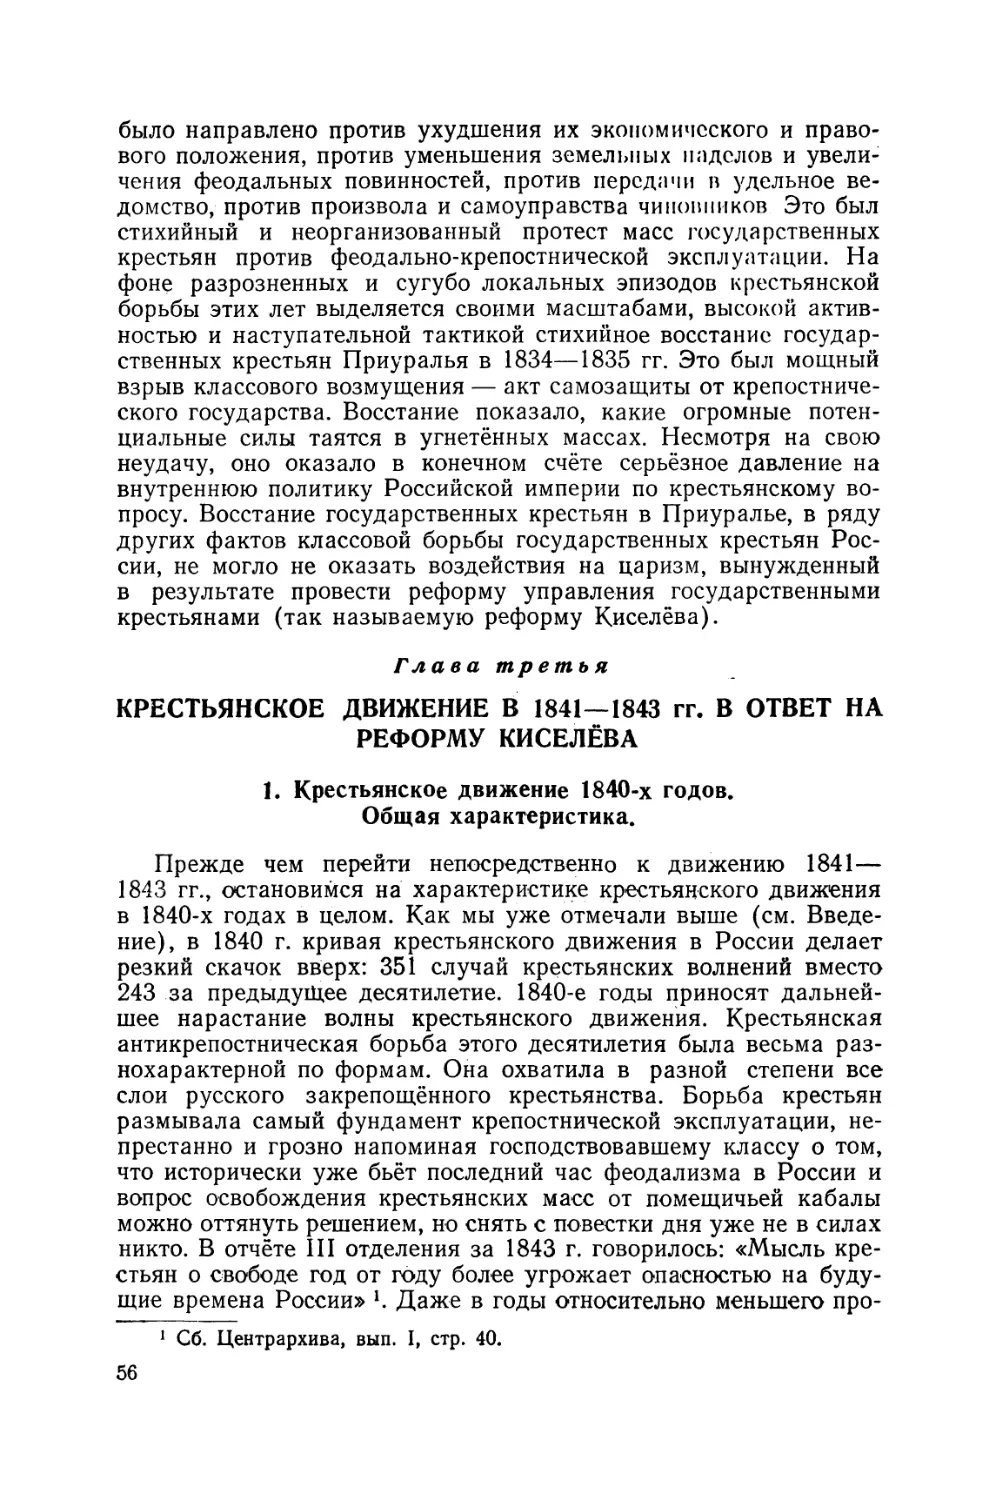 Глава III. Крестьянское движение в 1841 — 1843 гг. в ответ на реформу Киселёва